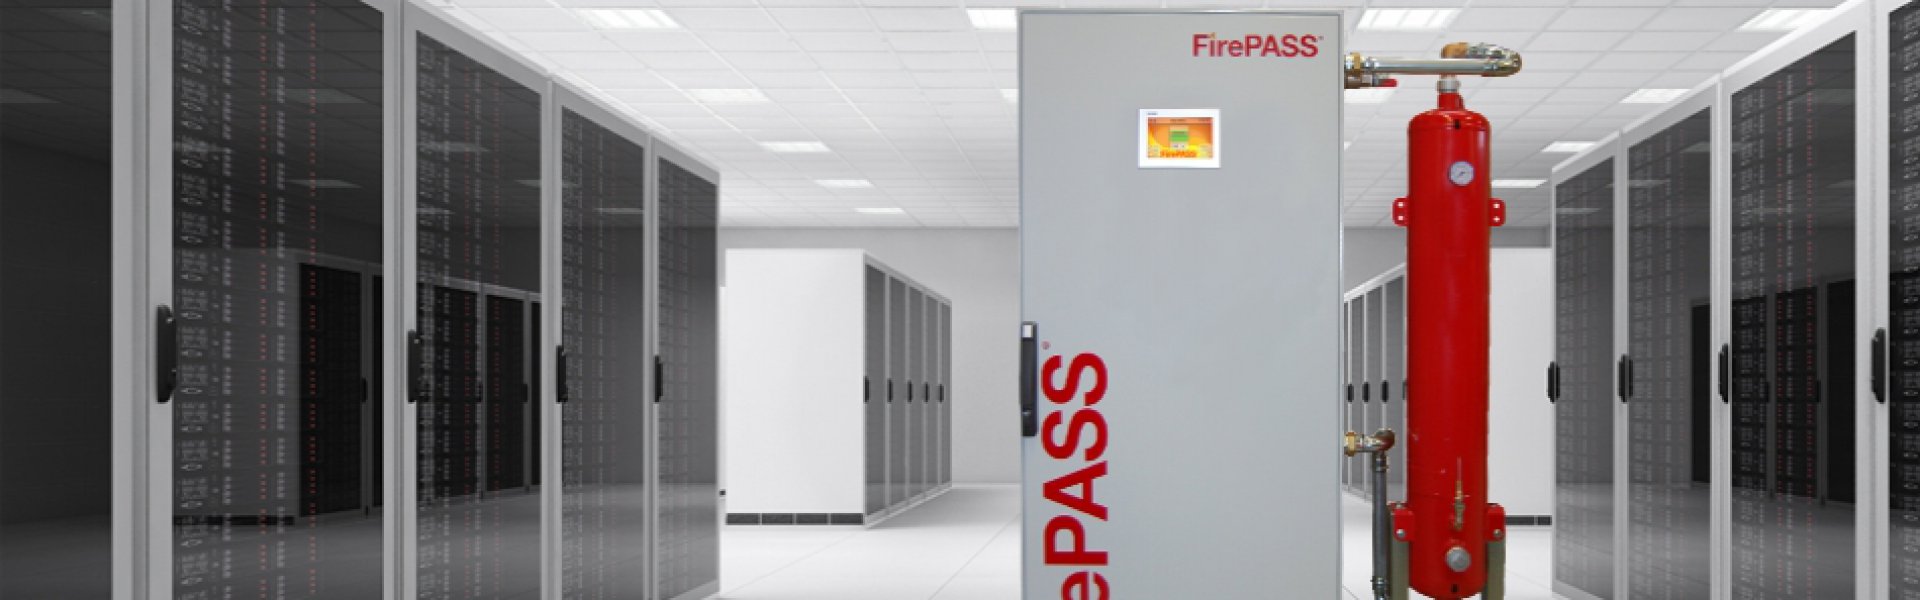 FirePASS banner